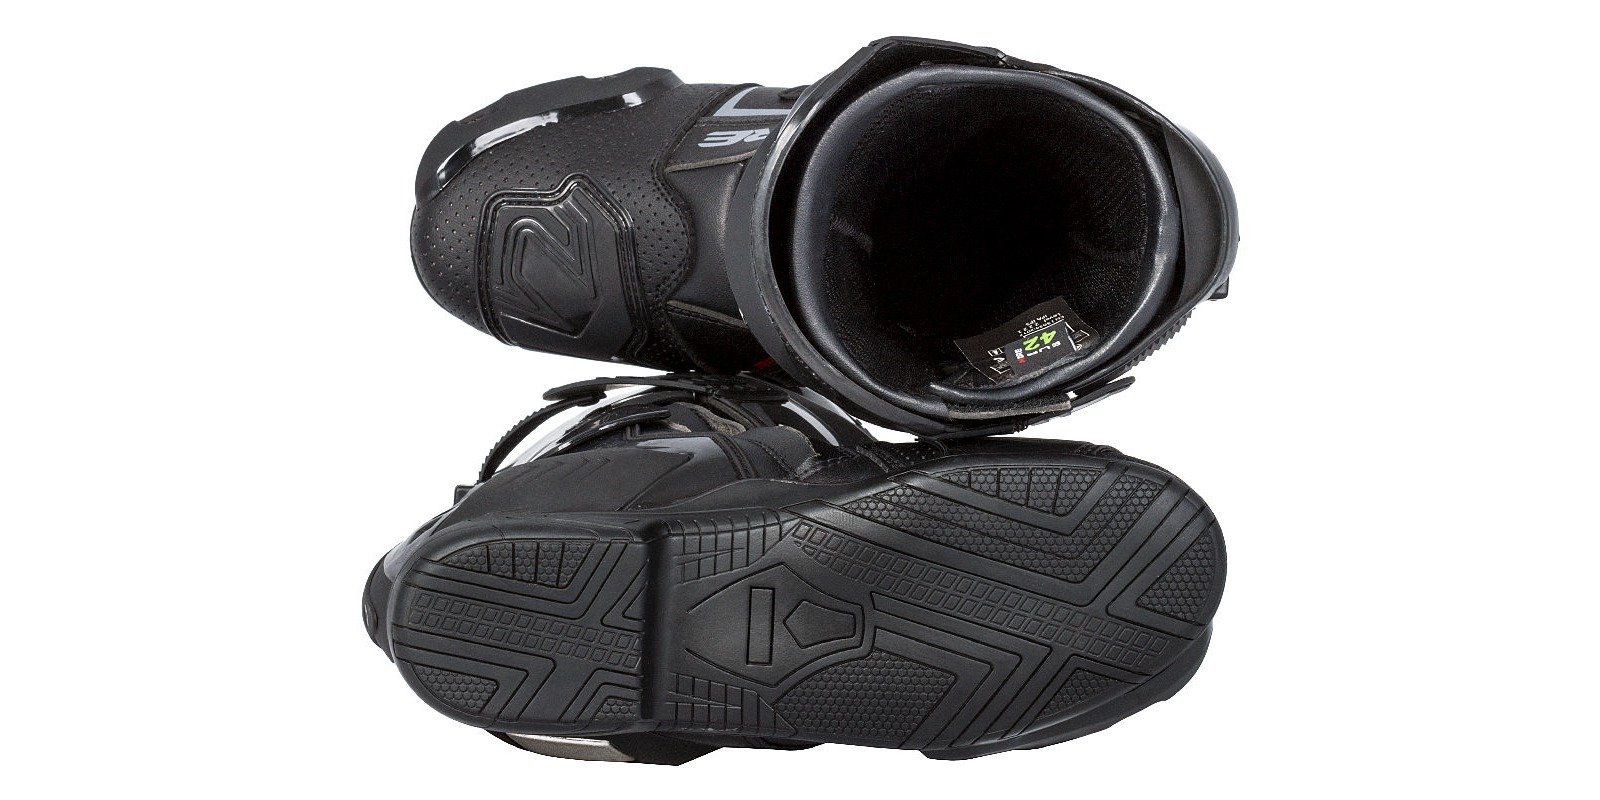 Obrázek produktu boty Sport 2.0, KORE (černé)